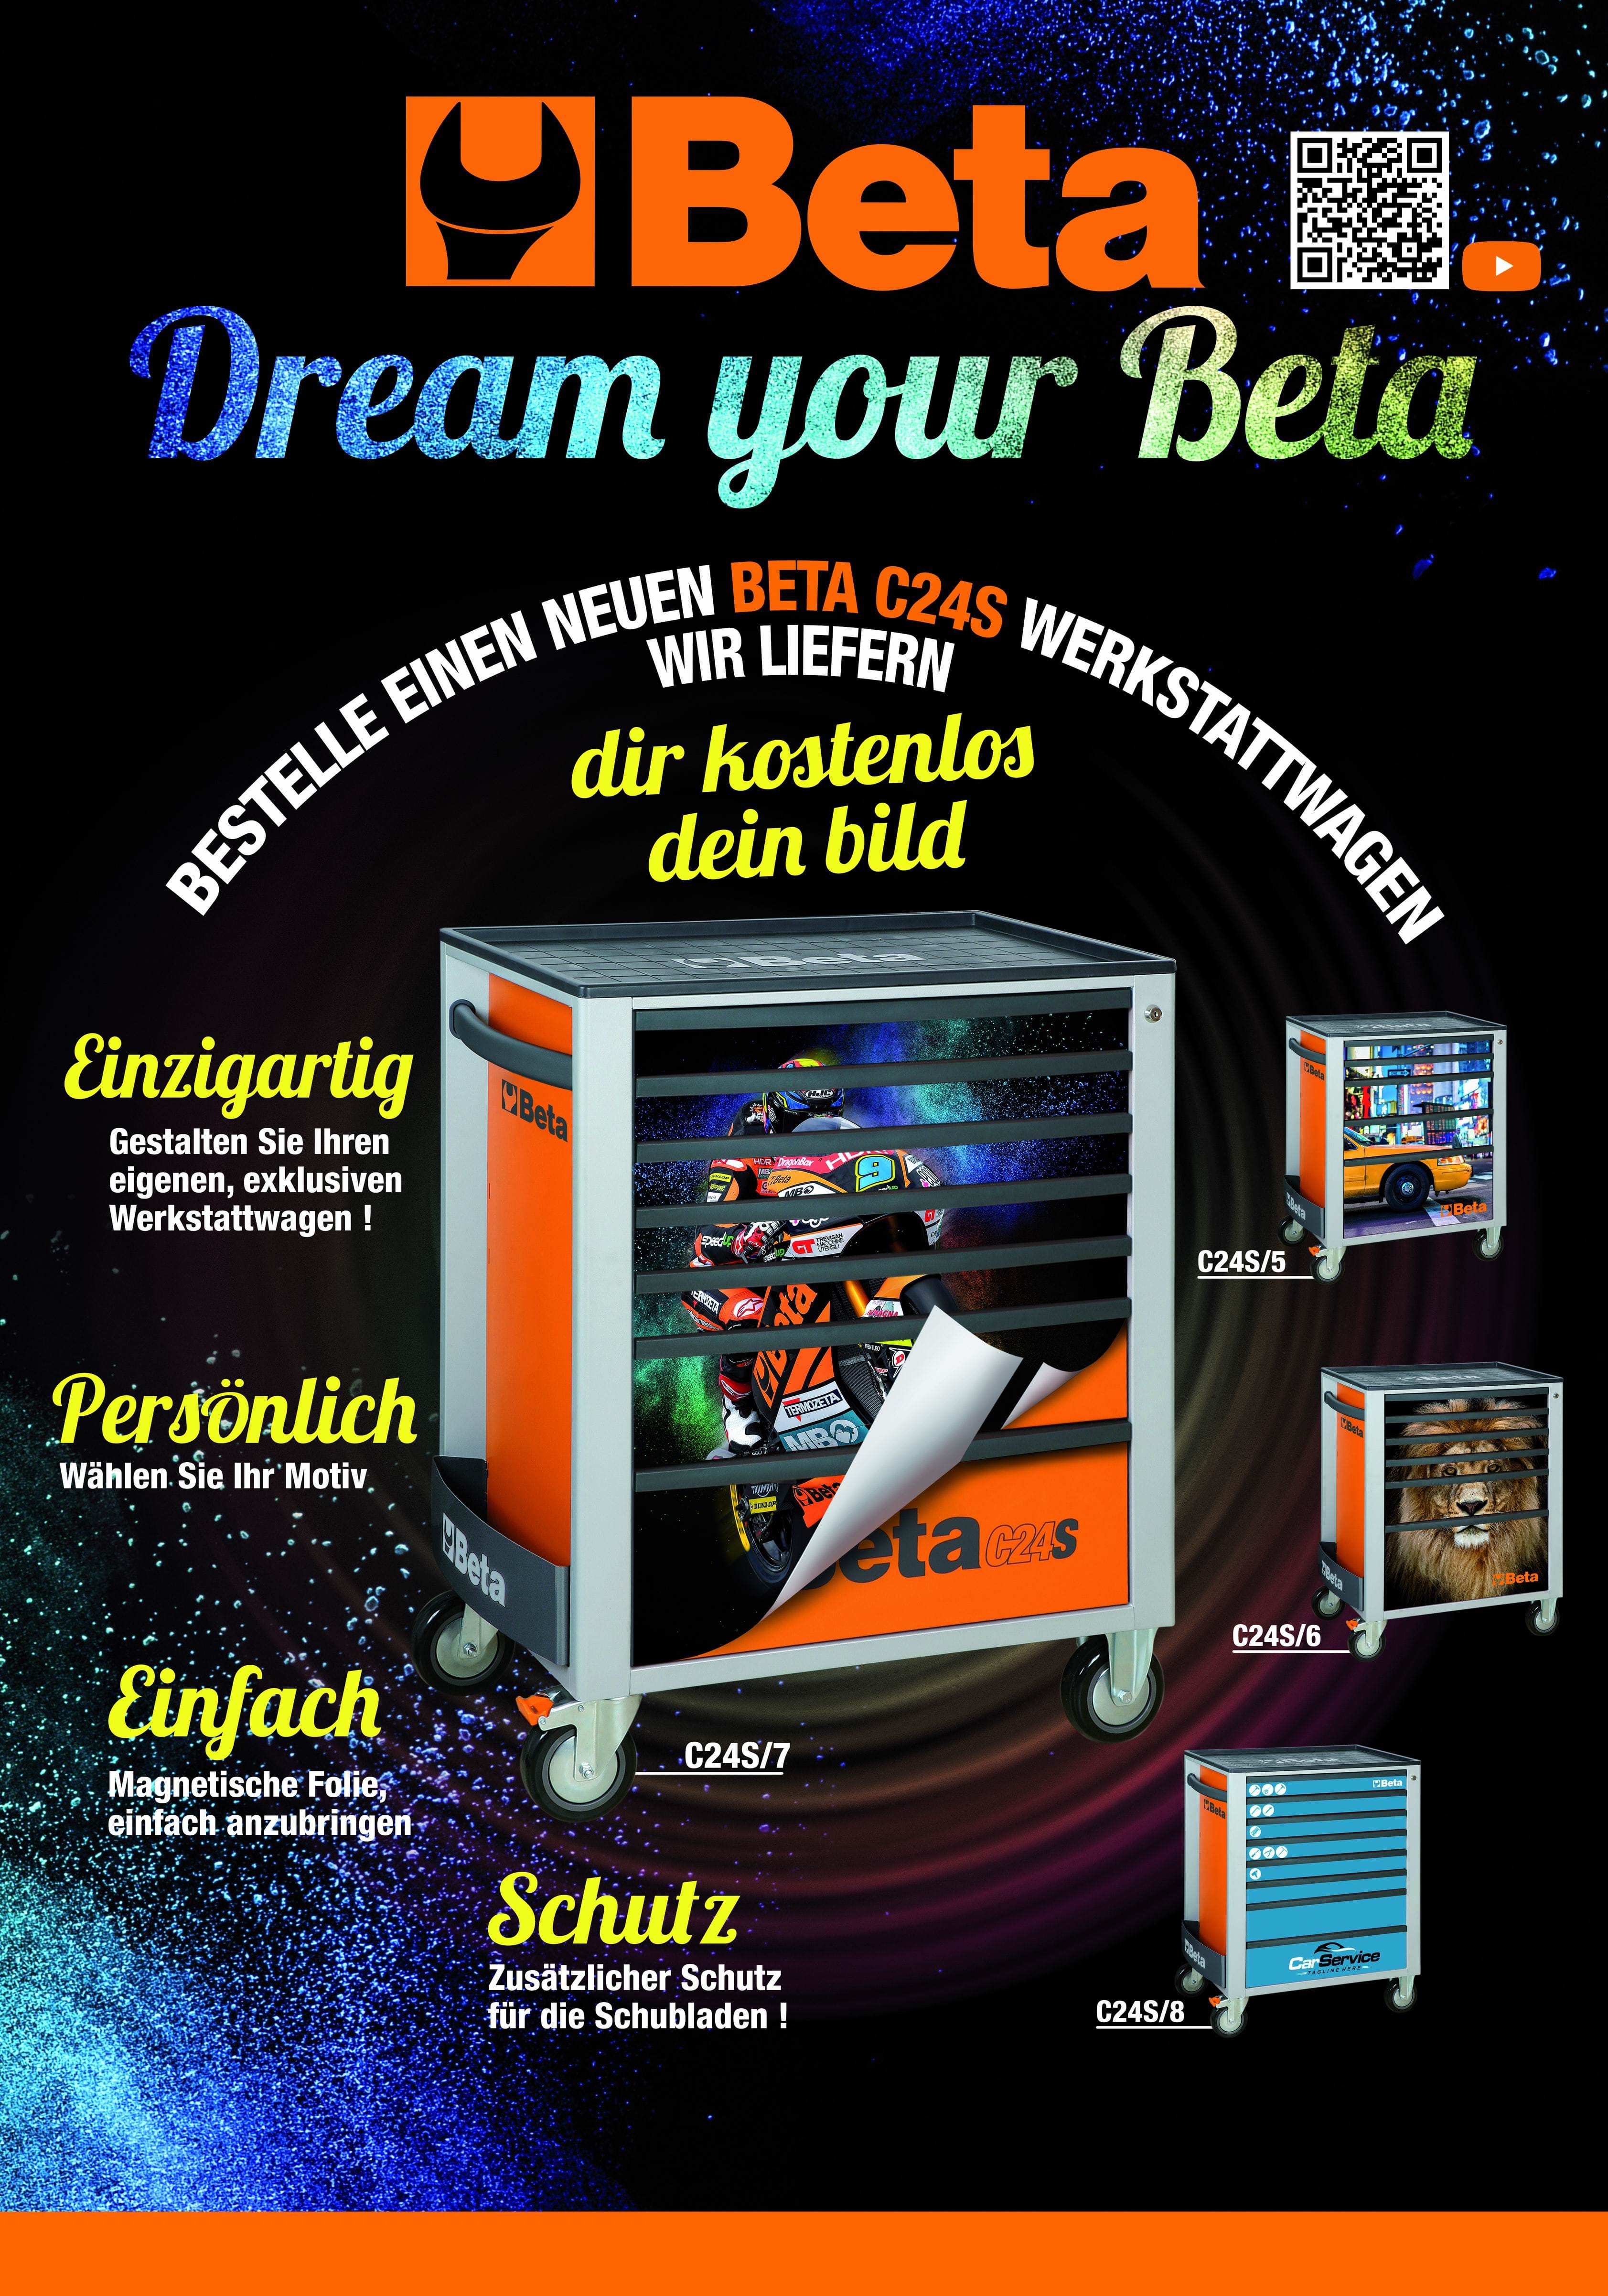 Dream your Beta Promotion während der Hardware 2021 gültig!